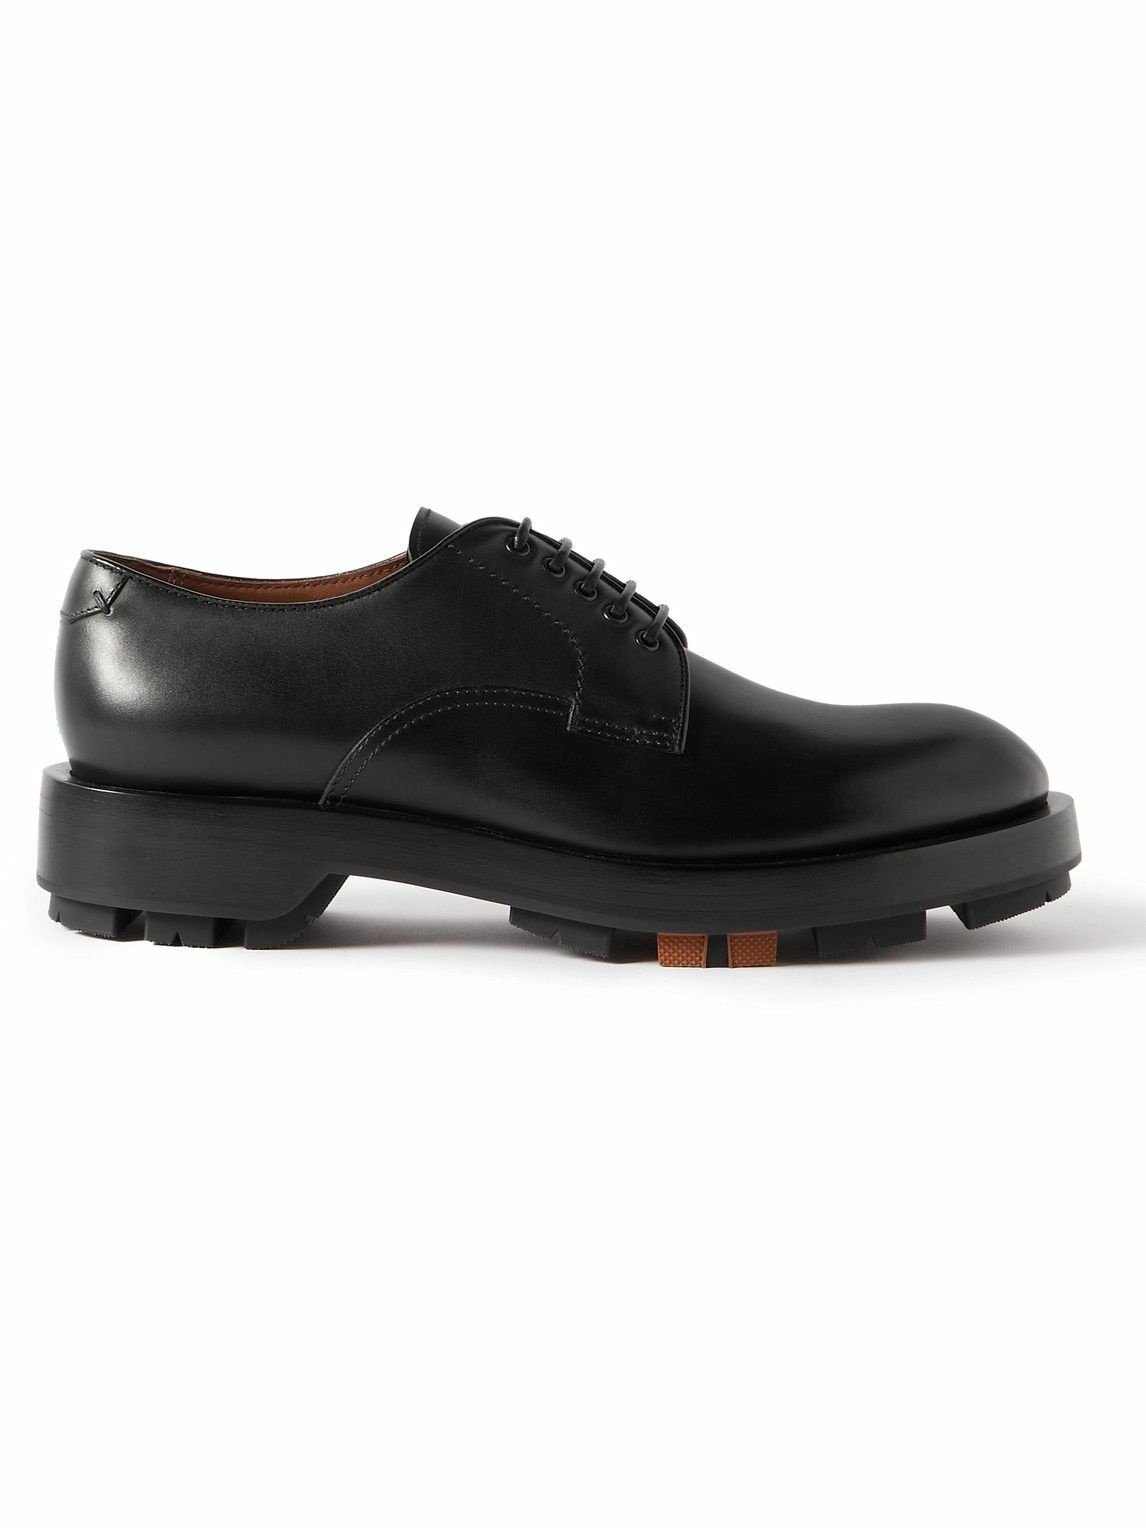 Zegna - Udine Leather Derby Shoes - Black Zegna